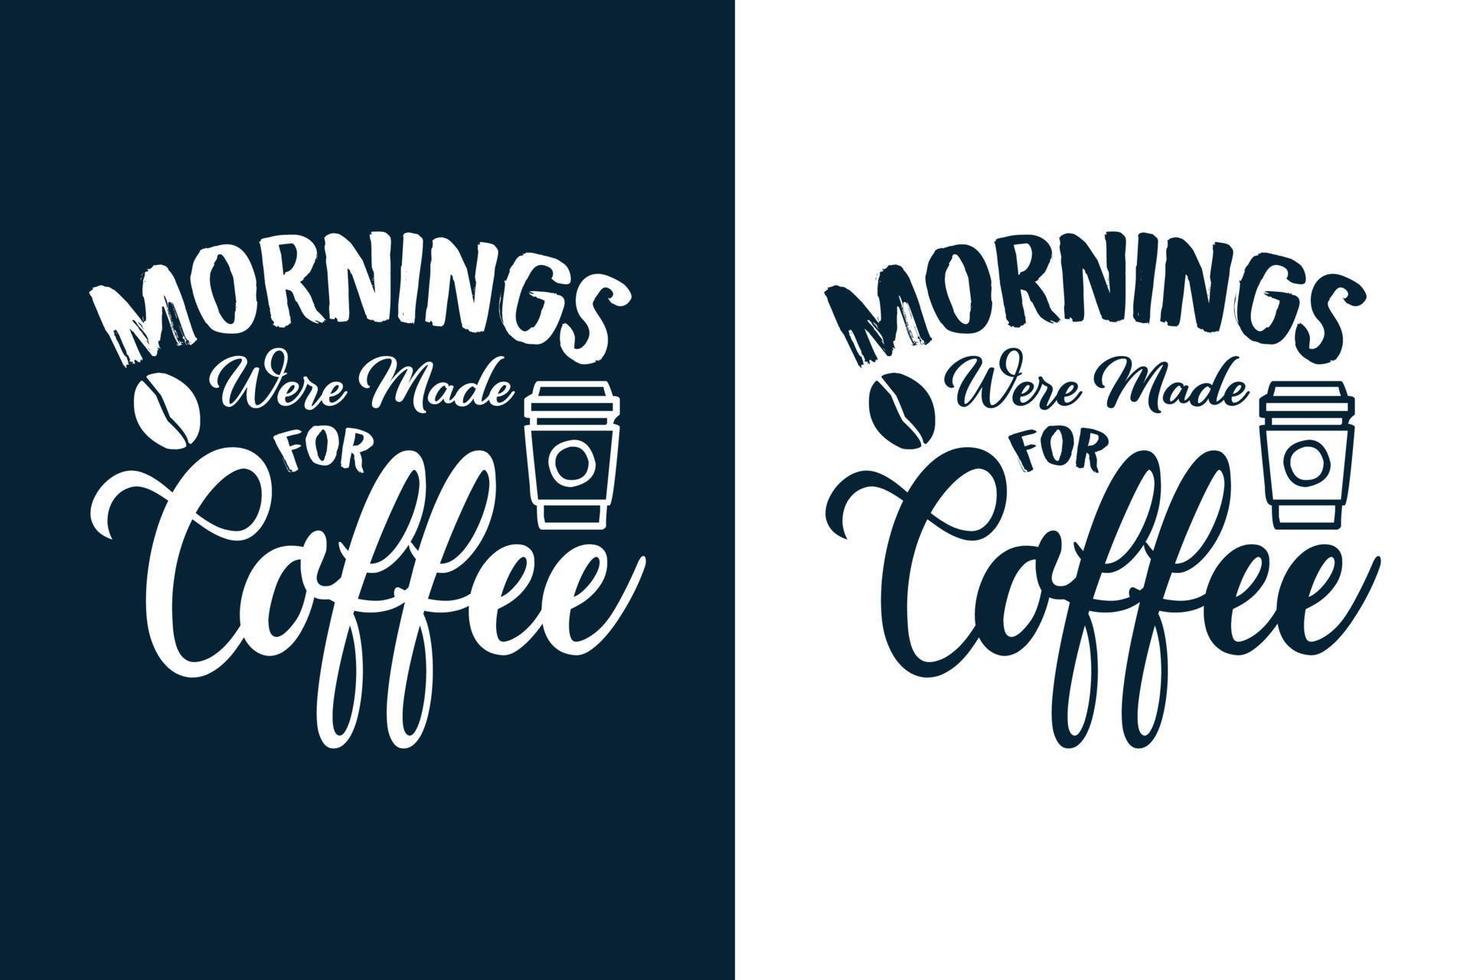 citazioni di design della maglietta del caffè vettore